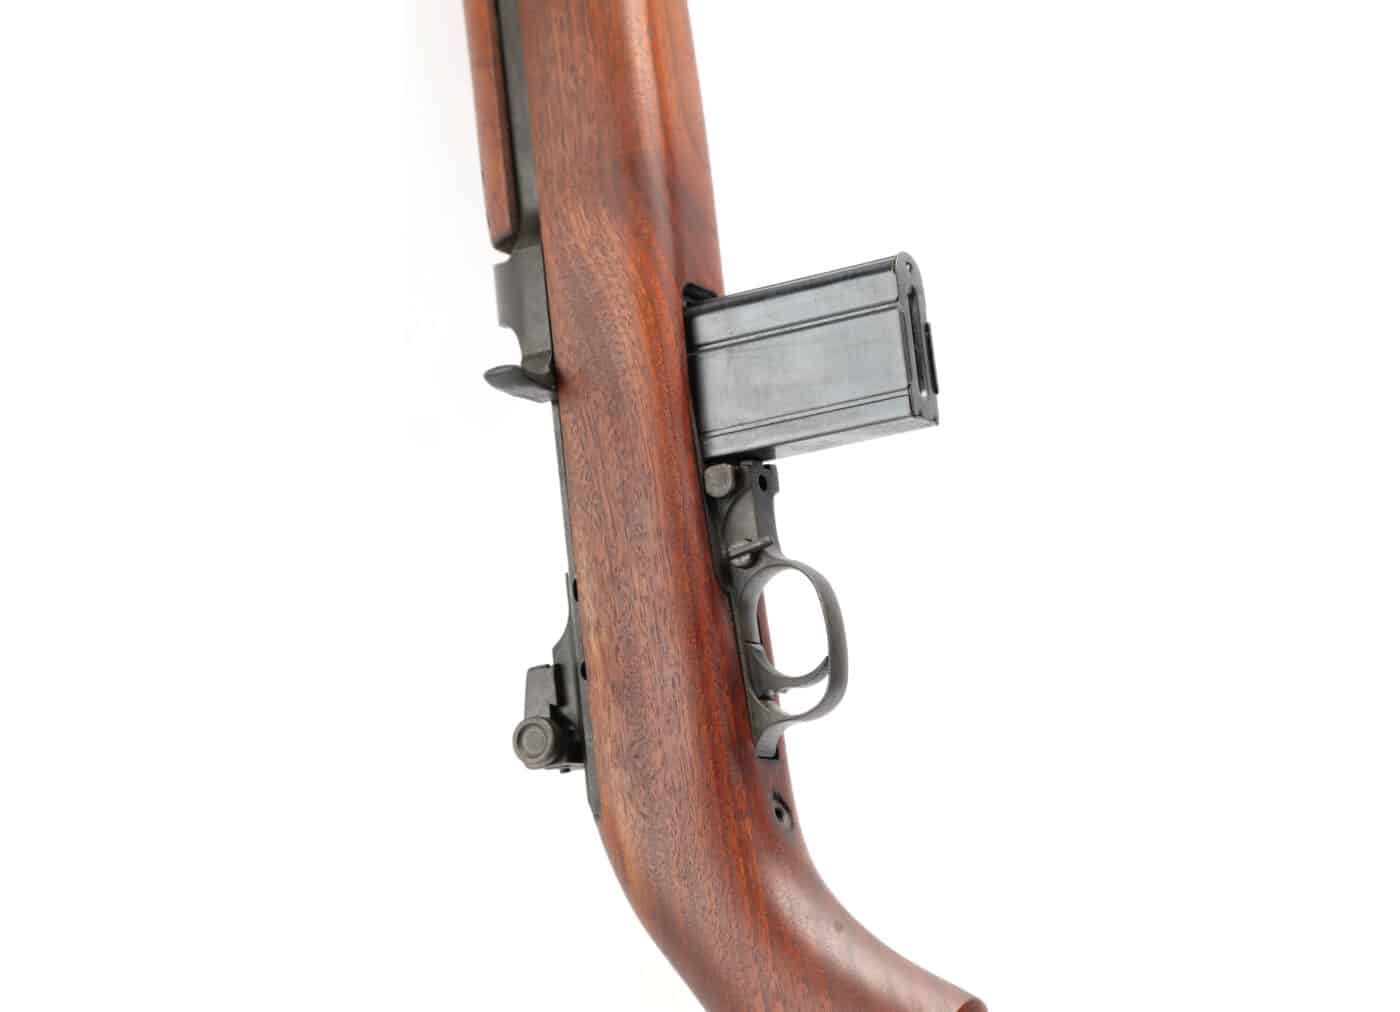 Springfield Armory M1 carbine magazine